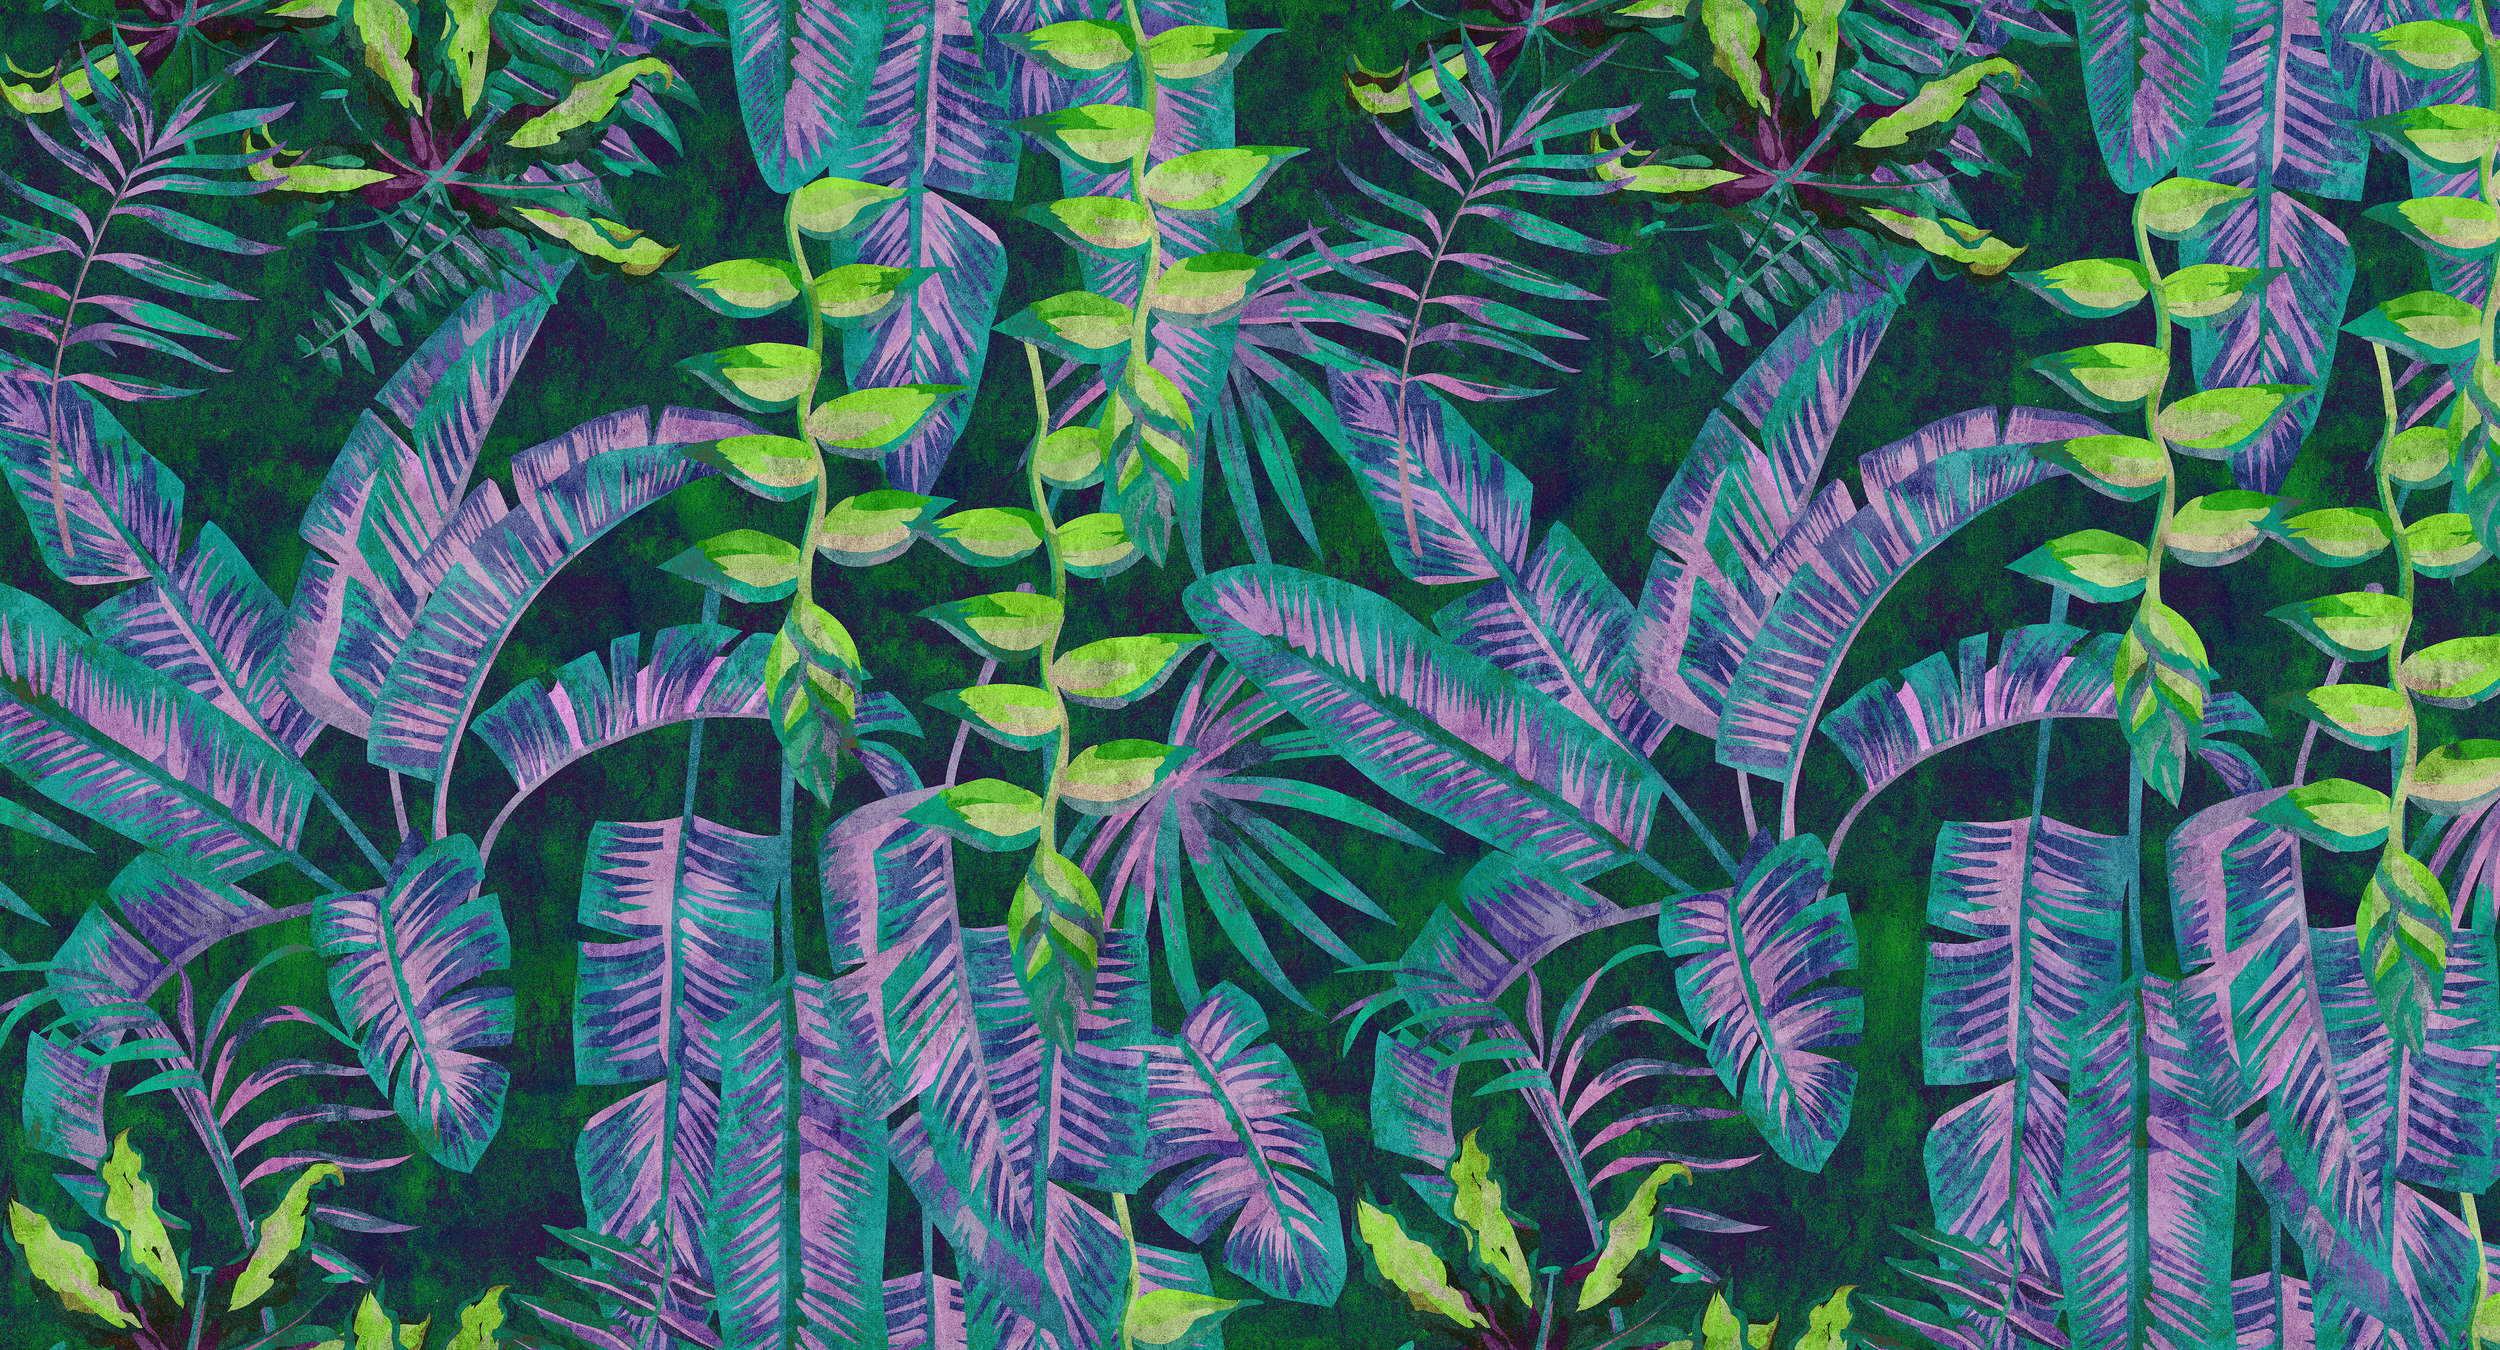             Tropicana 5 - Dschungel Fototapete mit Neon-Farben in Löschpapier Struktur – Blau, Grün | Mattes Glattvlies
        